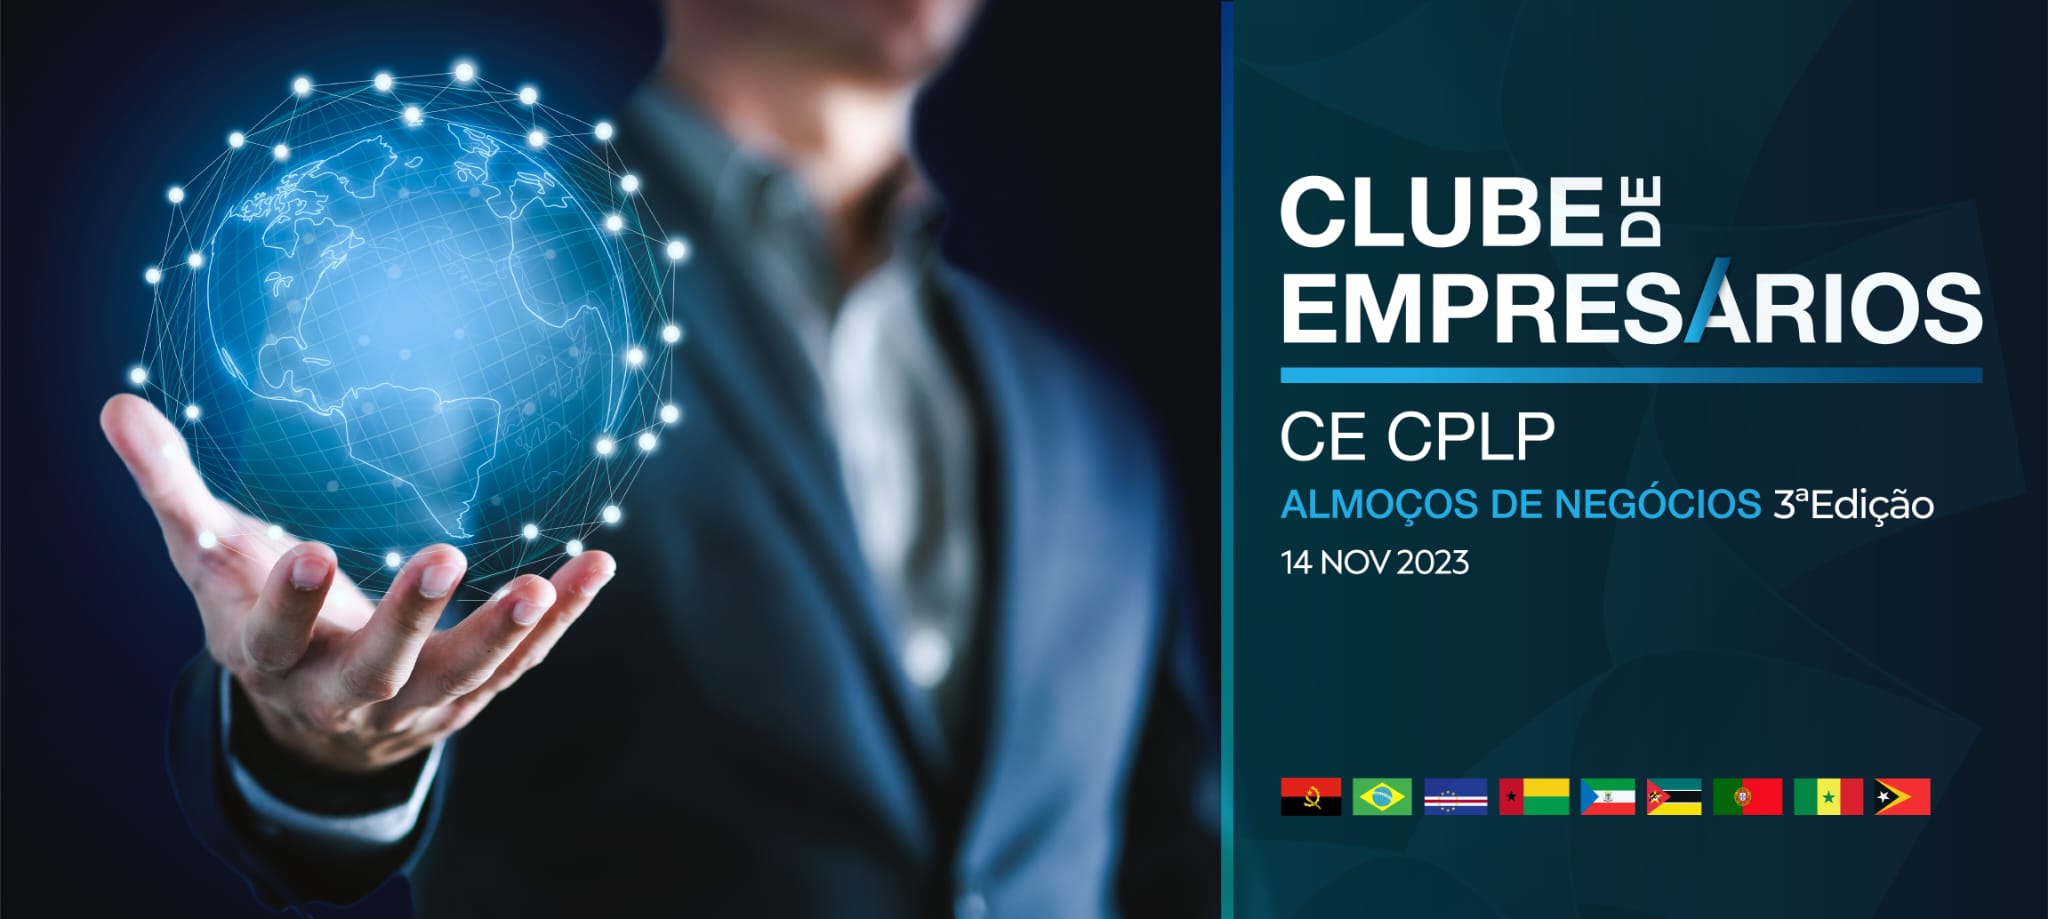 Clube de Empresários CE-CPLP – Almoços de Negócios 3ª Edição